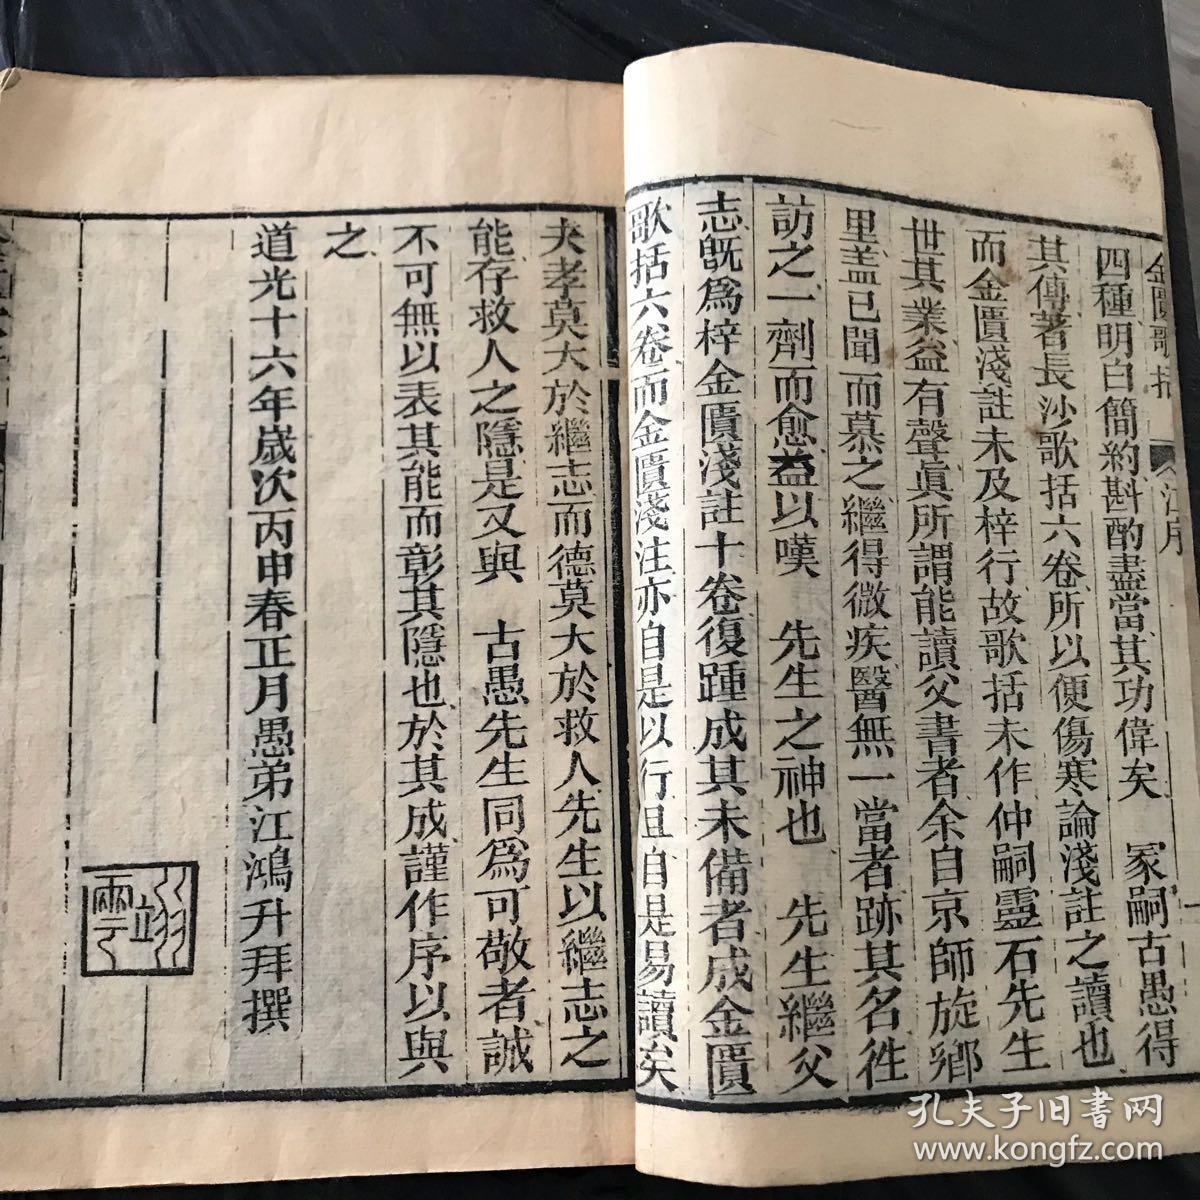 中医古籍【金匮方歌括】湖南益元书局木刻本 1697